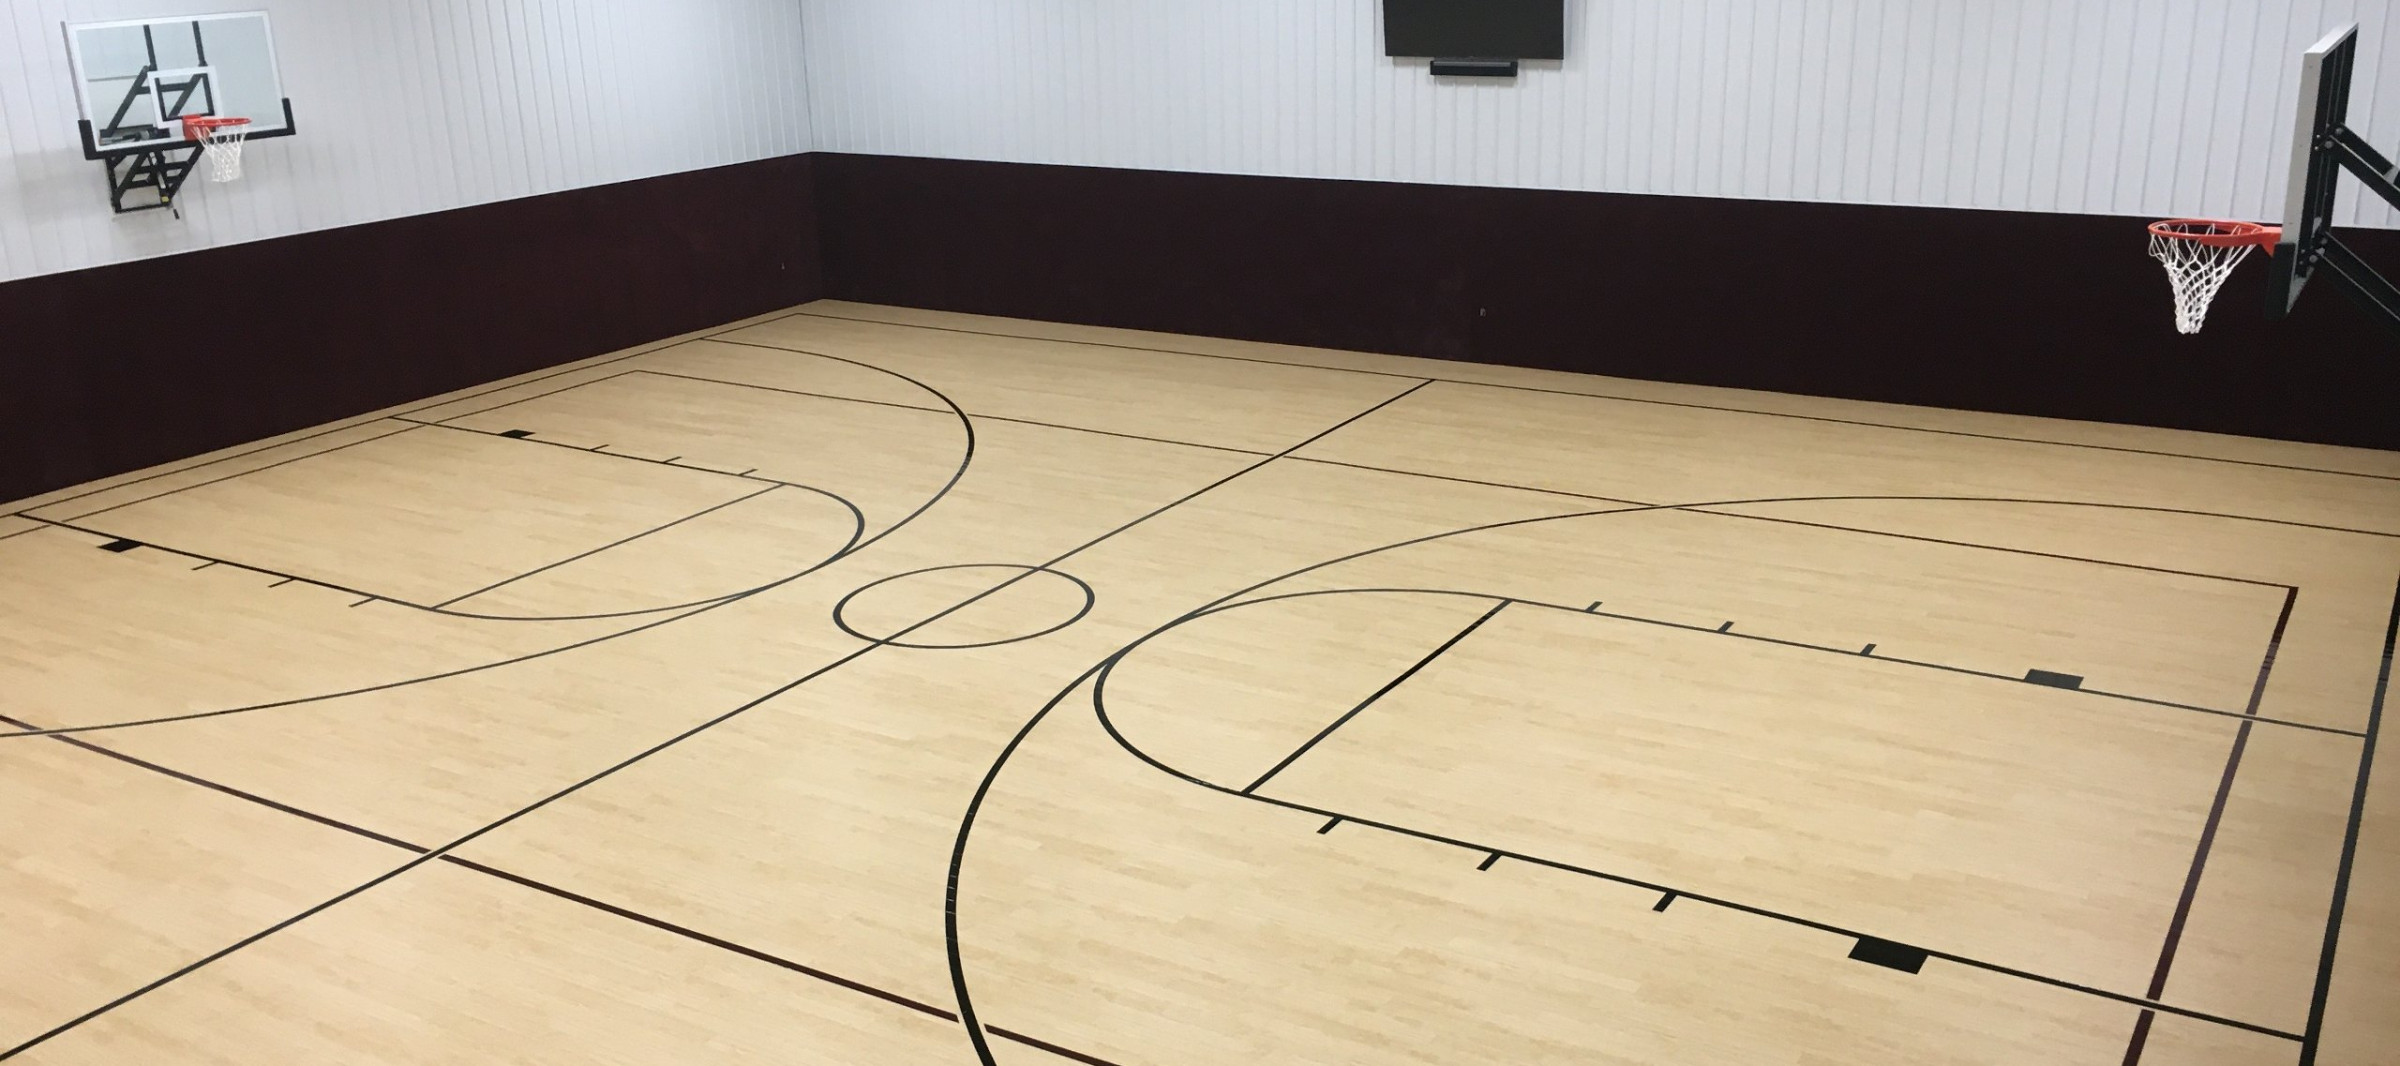 ウェルショップIncStores 3 8 Inch Thick Indoor Basketball Court Flooring Build